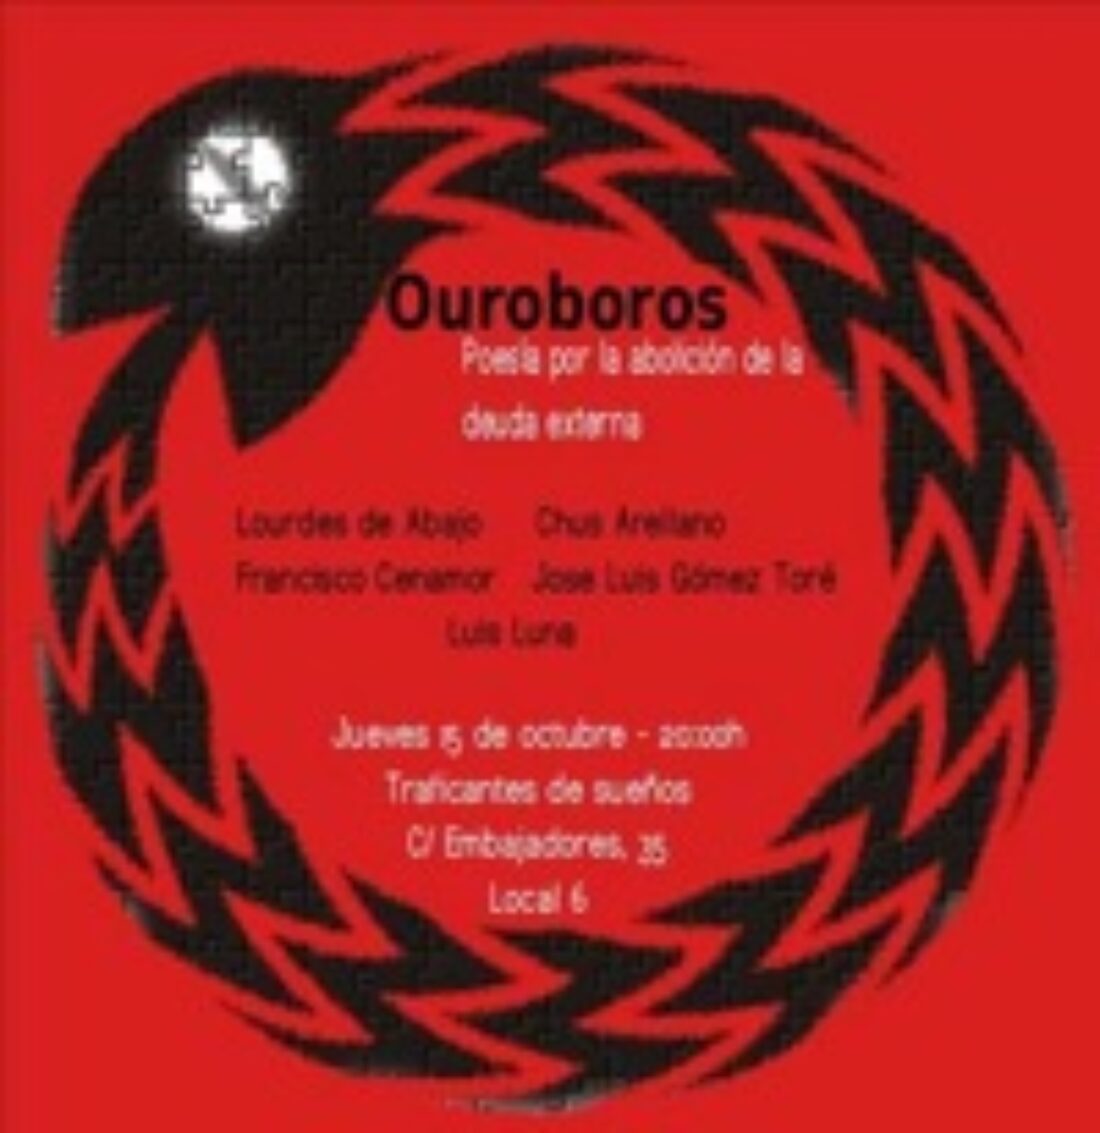 15 octubre, Madrid : OUROBOROS. Poesía por la abolición de la deuda externa